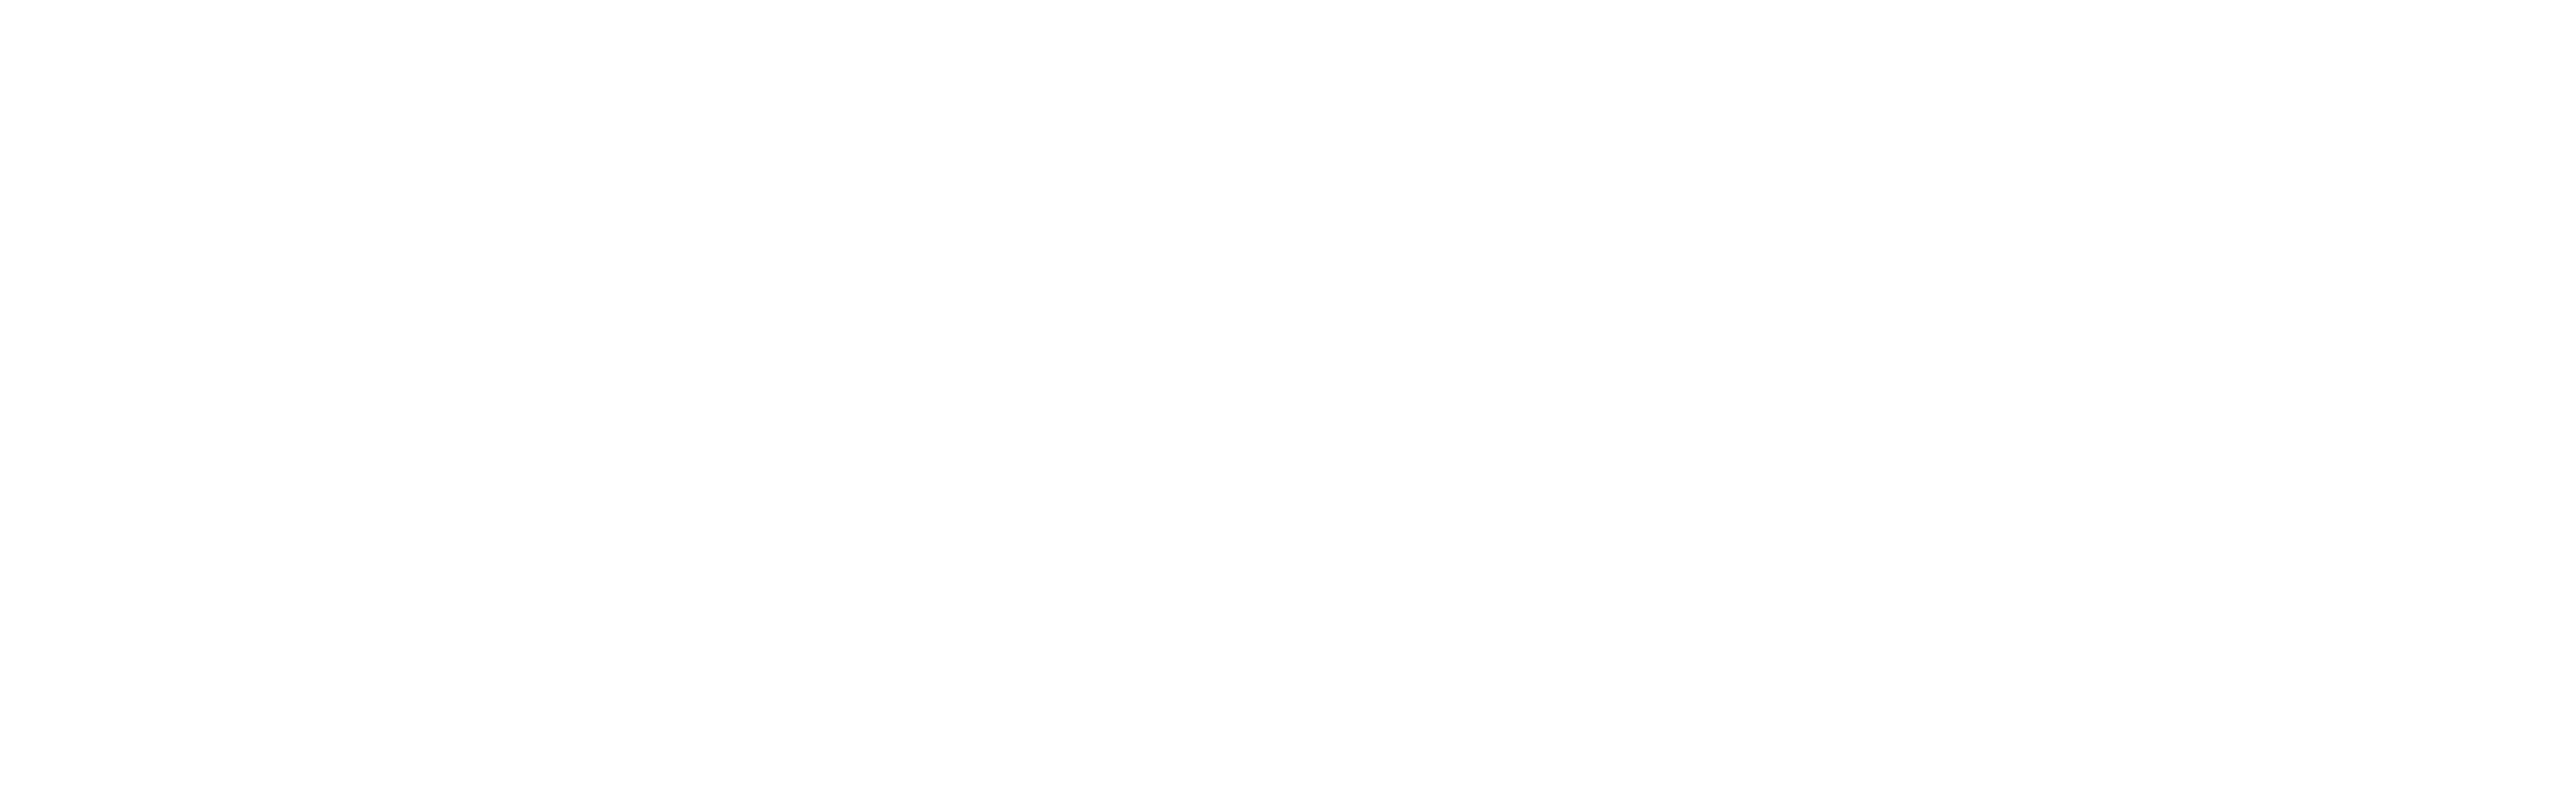 Mr. Barrtenderr Logo